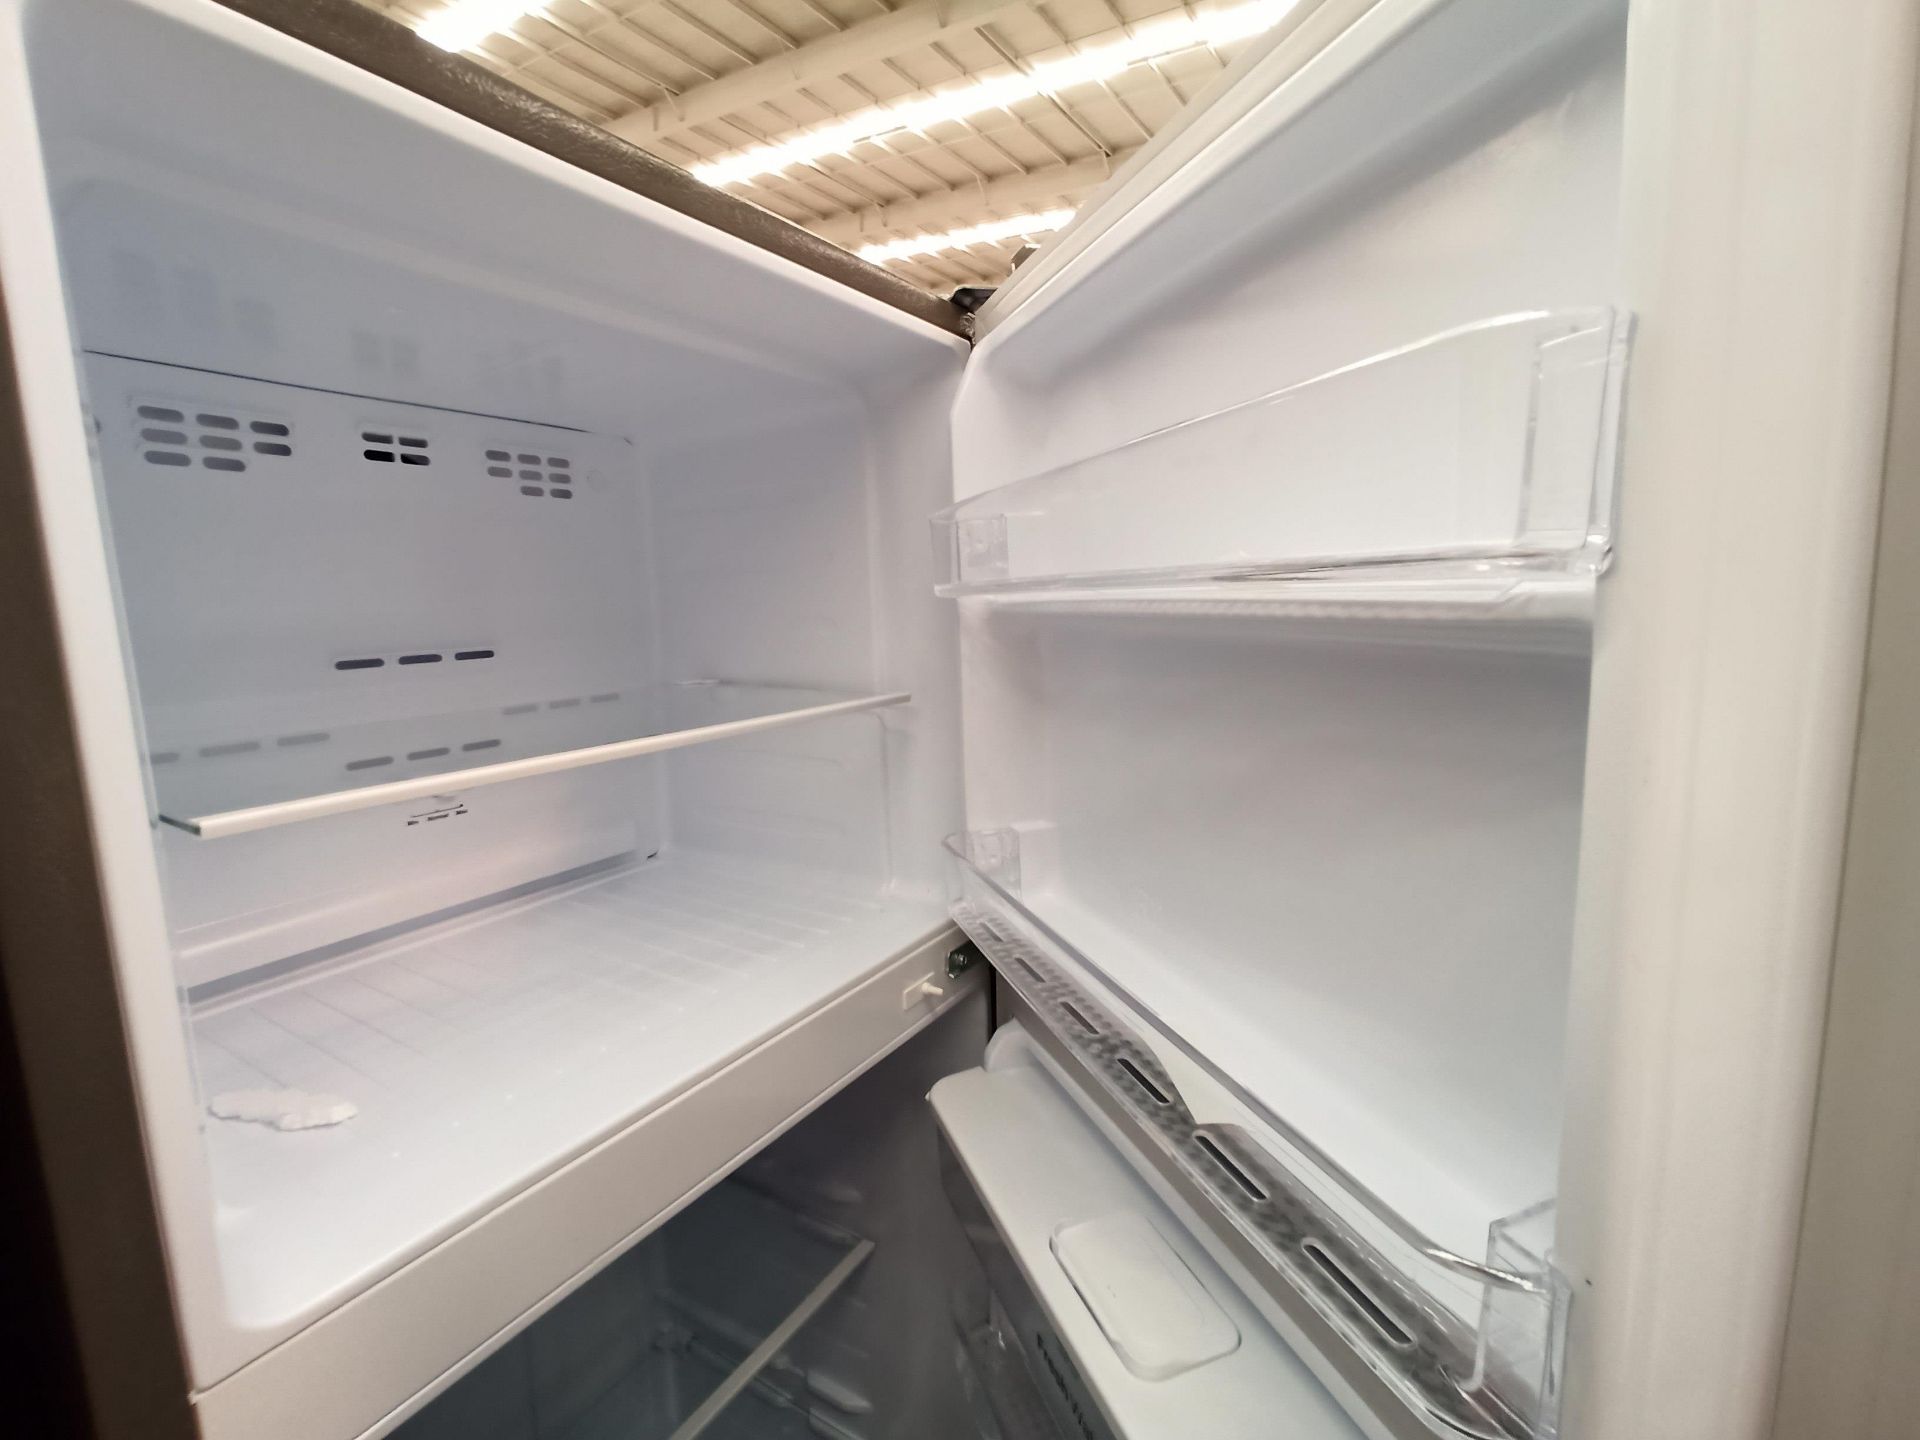 Lote de 2 refrigeradores contiene: 1 Refrigerador con dispensador de agua Marca MABE, Modelo RMA300 - Image 16 of 18